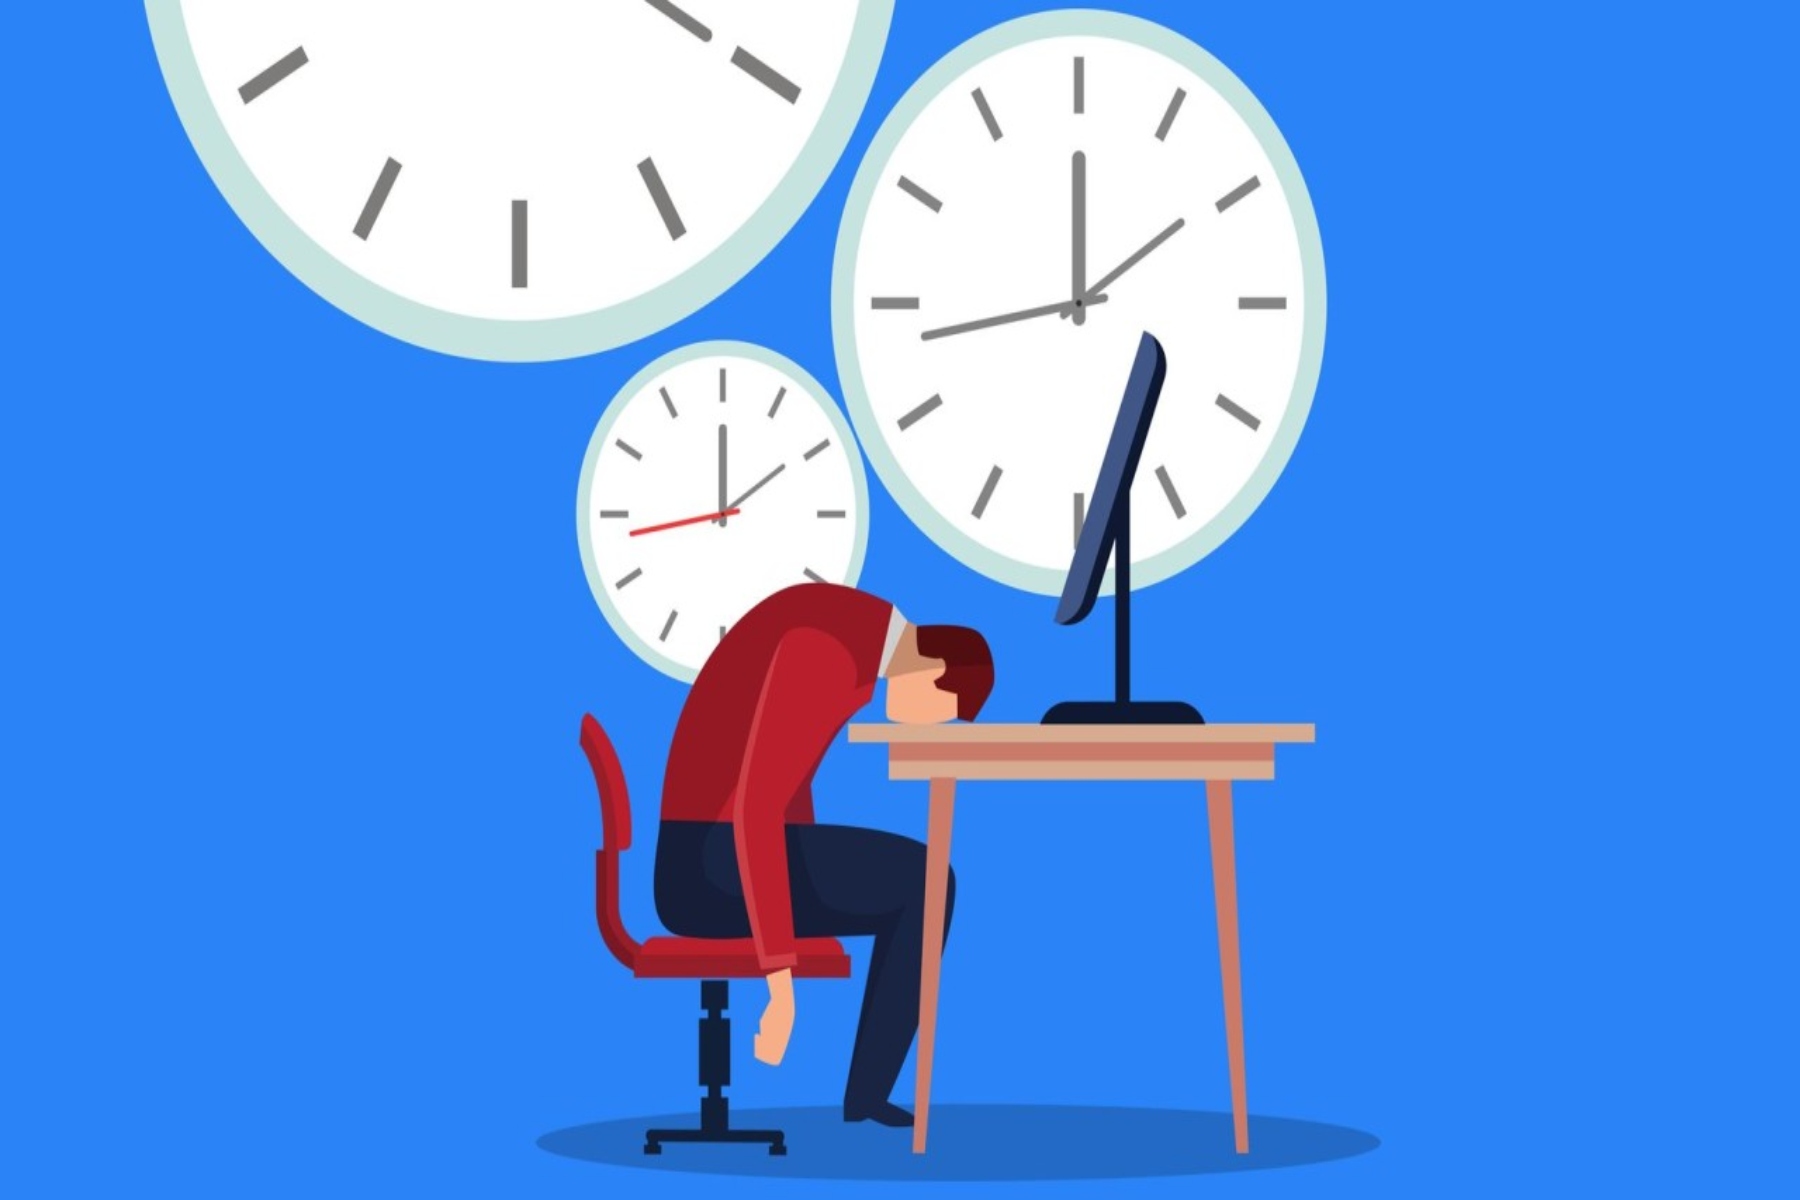 Ώρες εργασίας: Οι παρατεταμένες ώρες εργασίας μπορούν να αυξήσουν τον κίνδυνο εμφάνισης διαβήτη τύπου 2